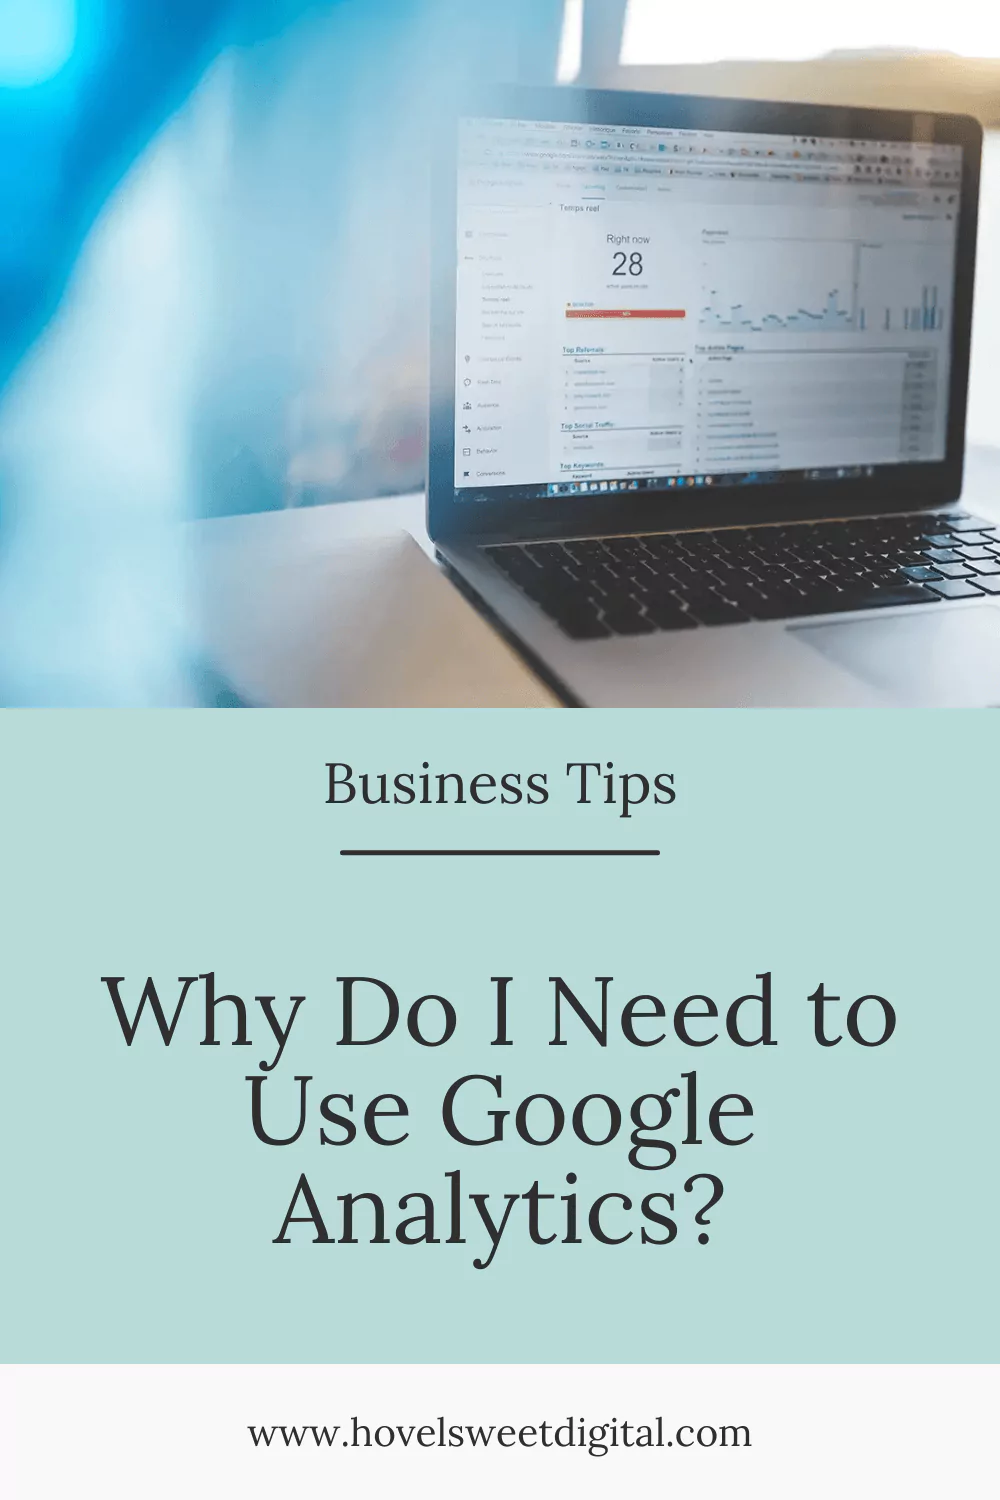 Why Do I Need to Use Google Analytics?